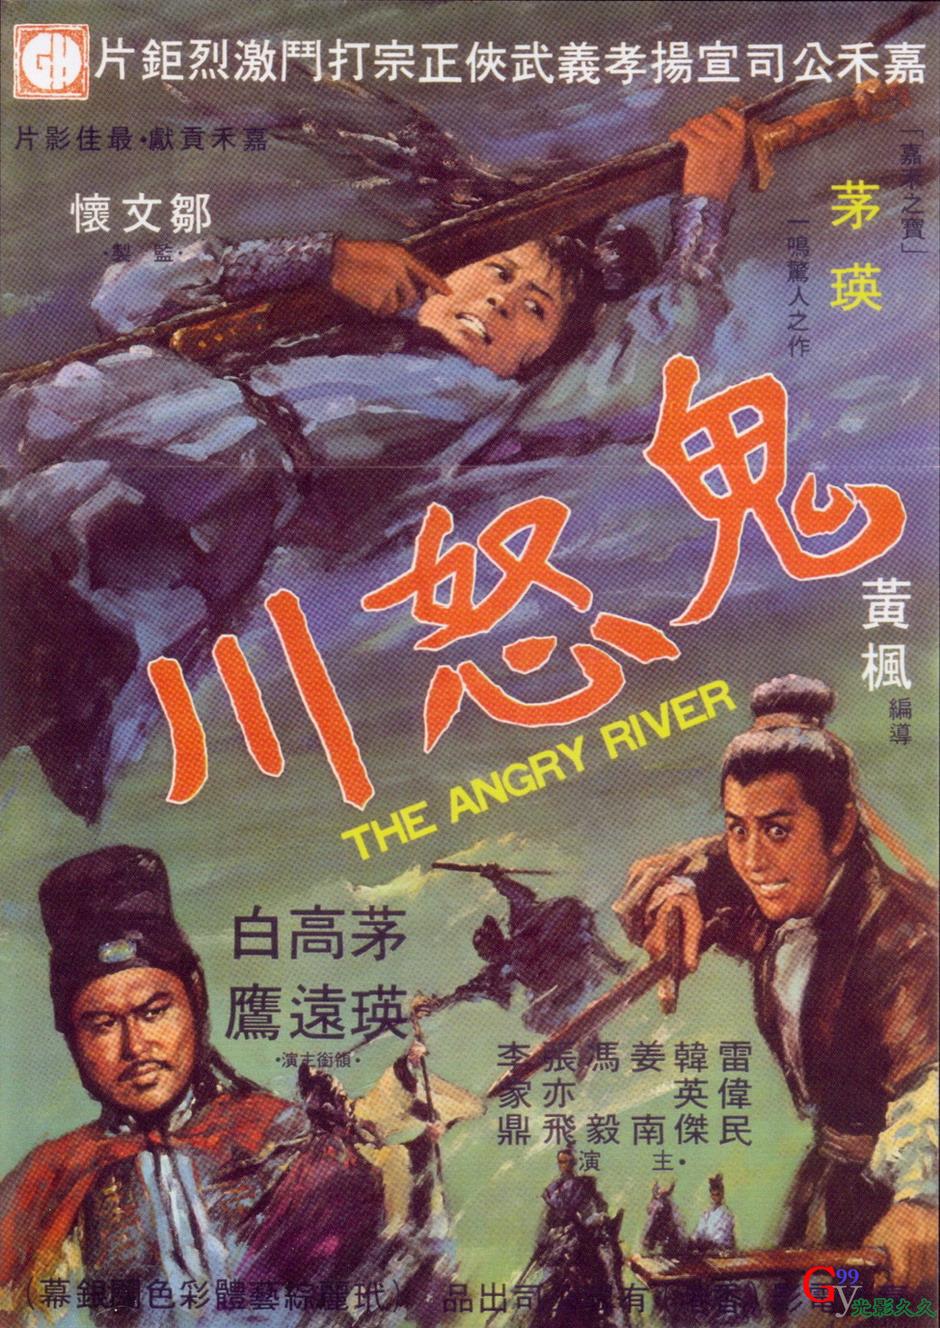 鬼怒川(1971年上映的古裝動作電影)